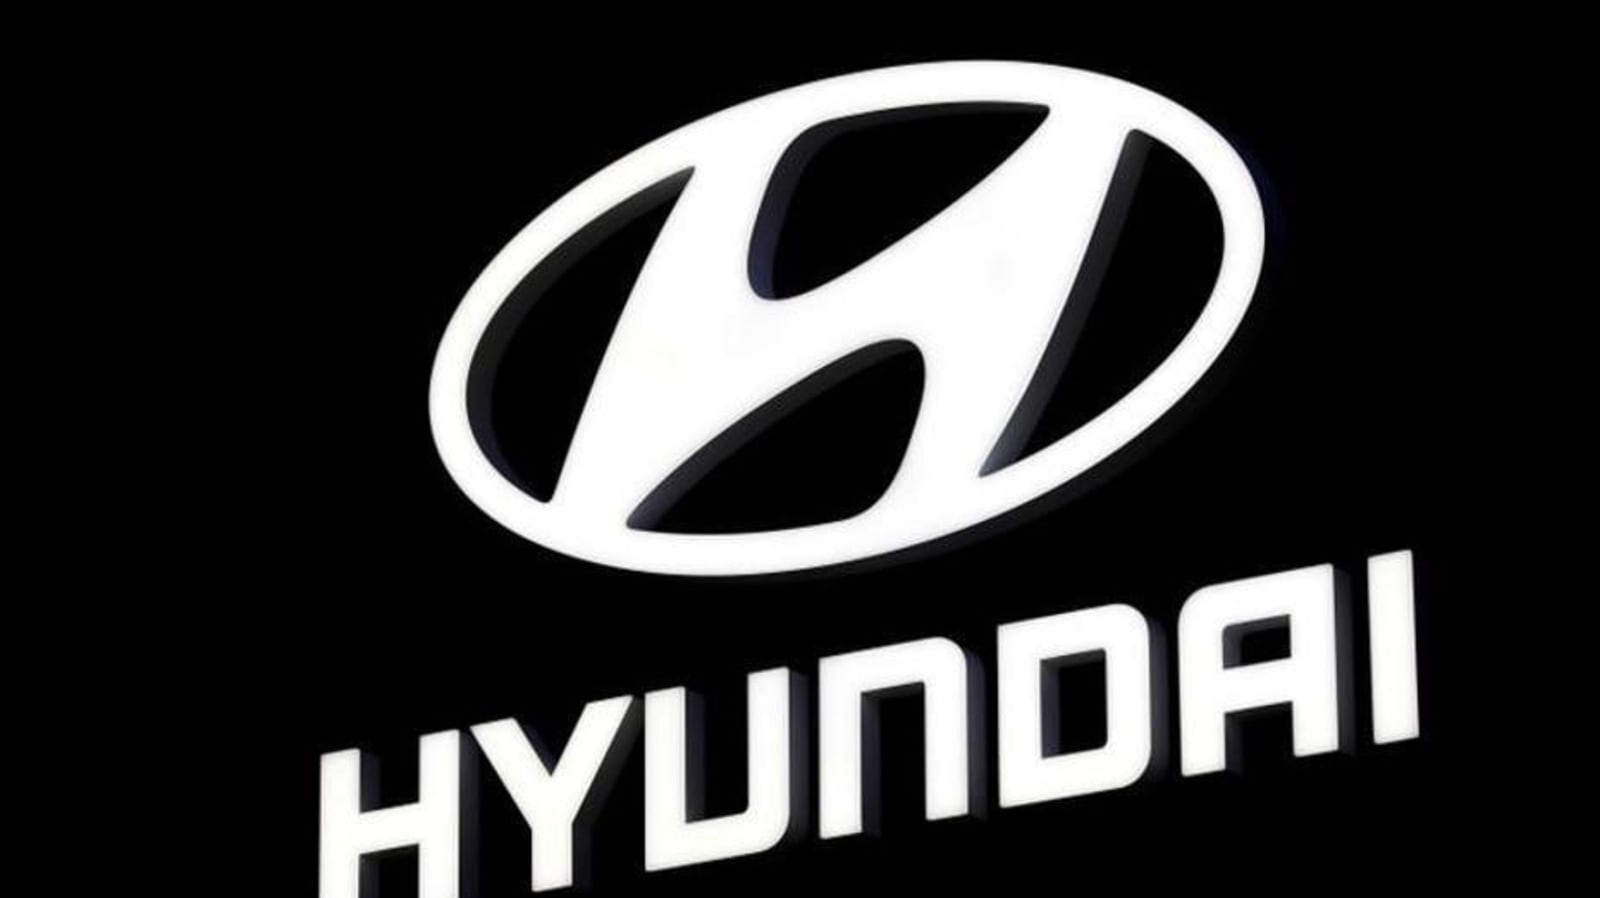 HYUNDAI i20 BADGE I 20 Emblem *NEW* suit Hyundai Rear | eBay